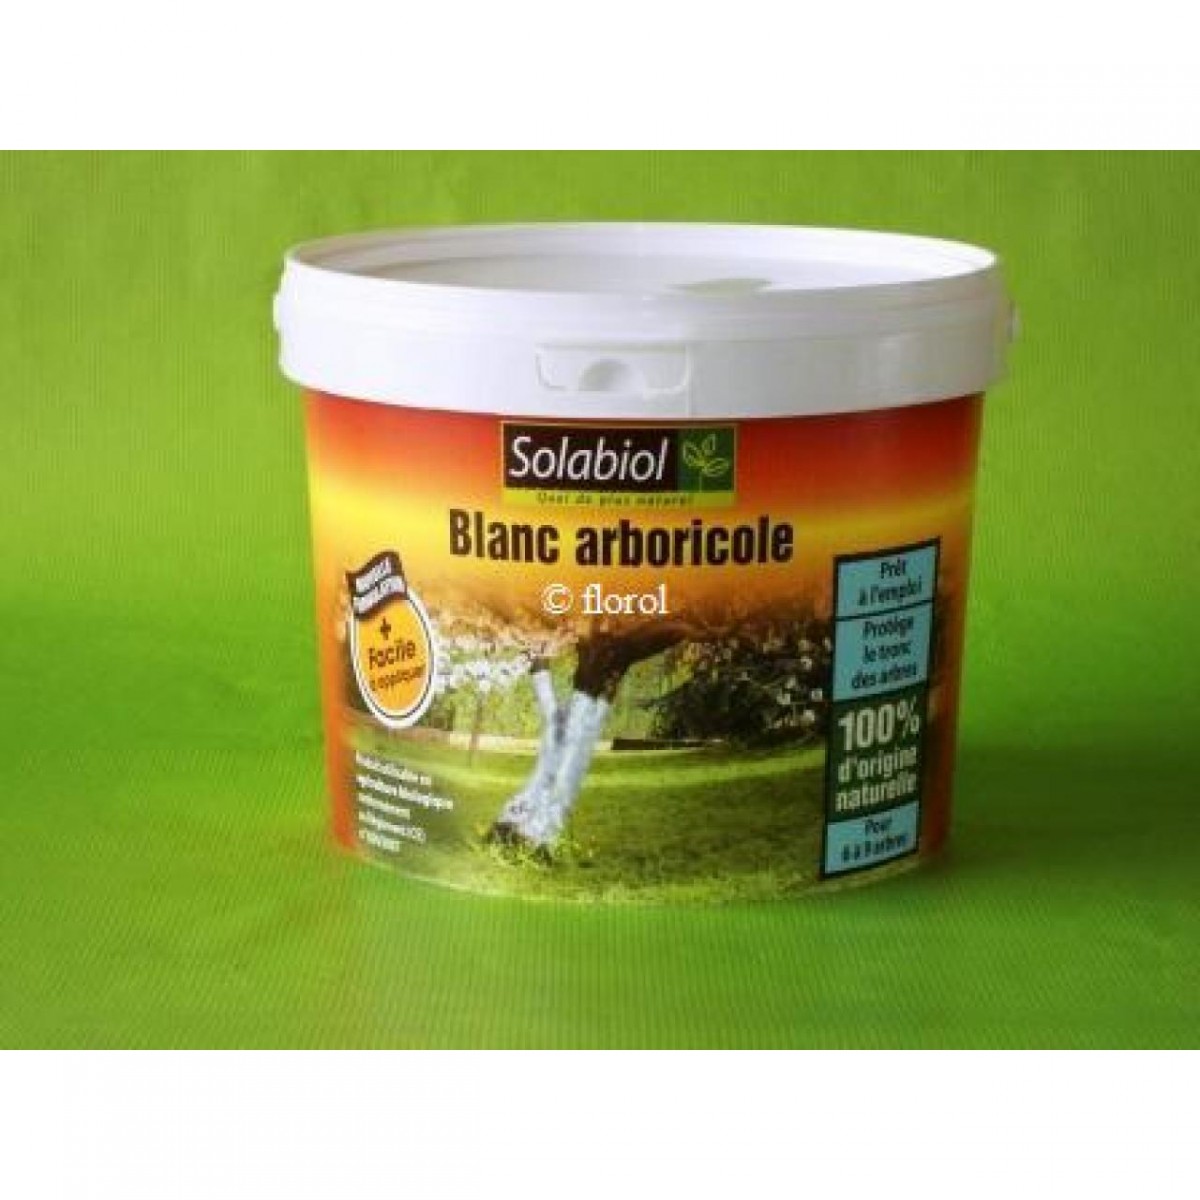 Blanc arboricole bio, 3 litres SOLABIOL. - Florol